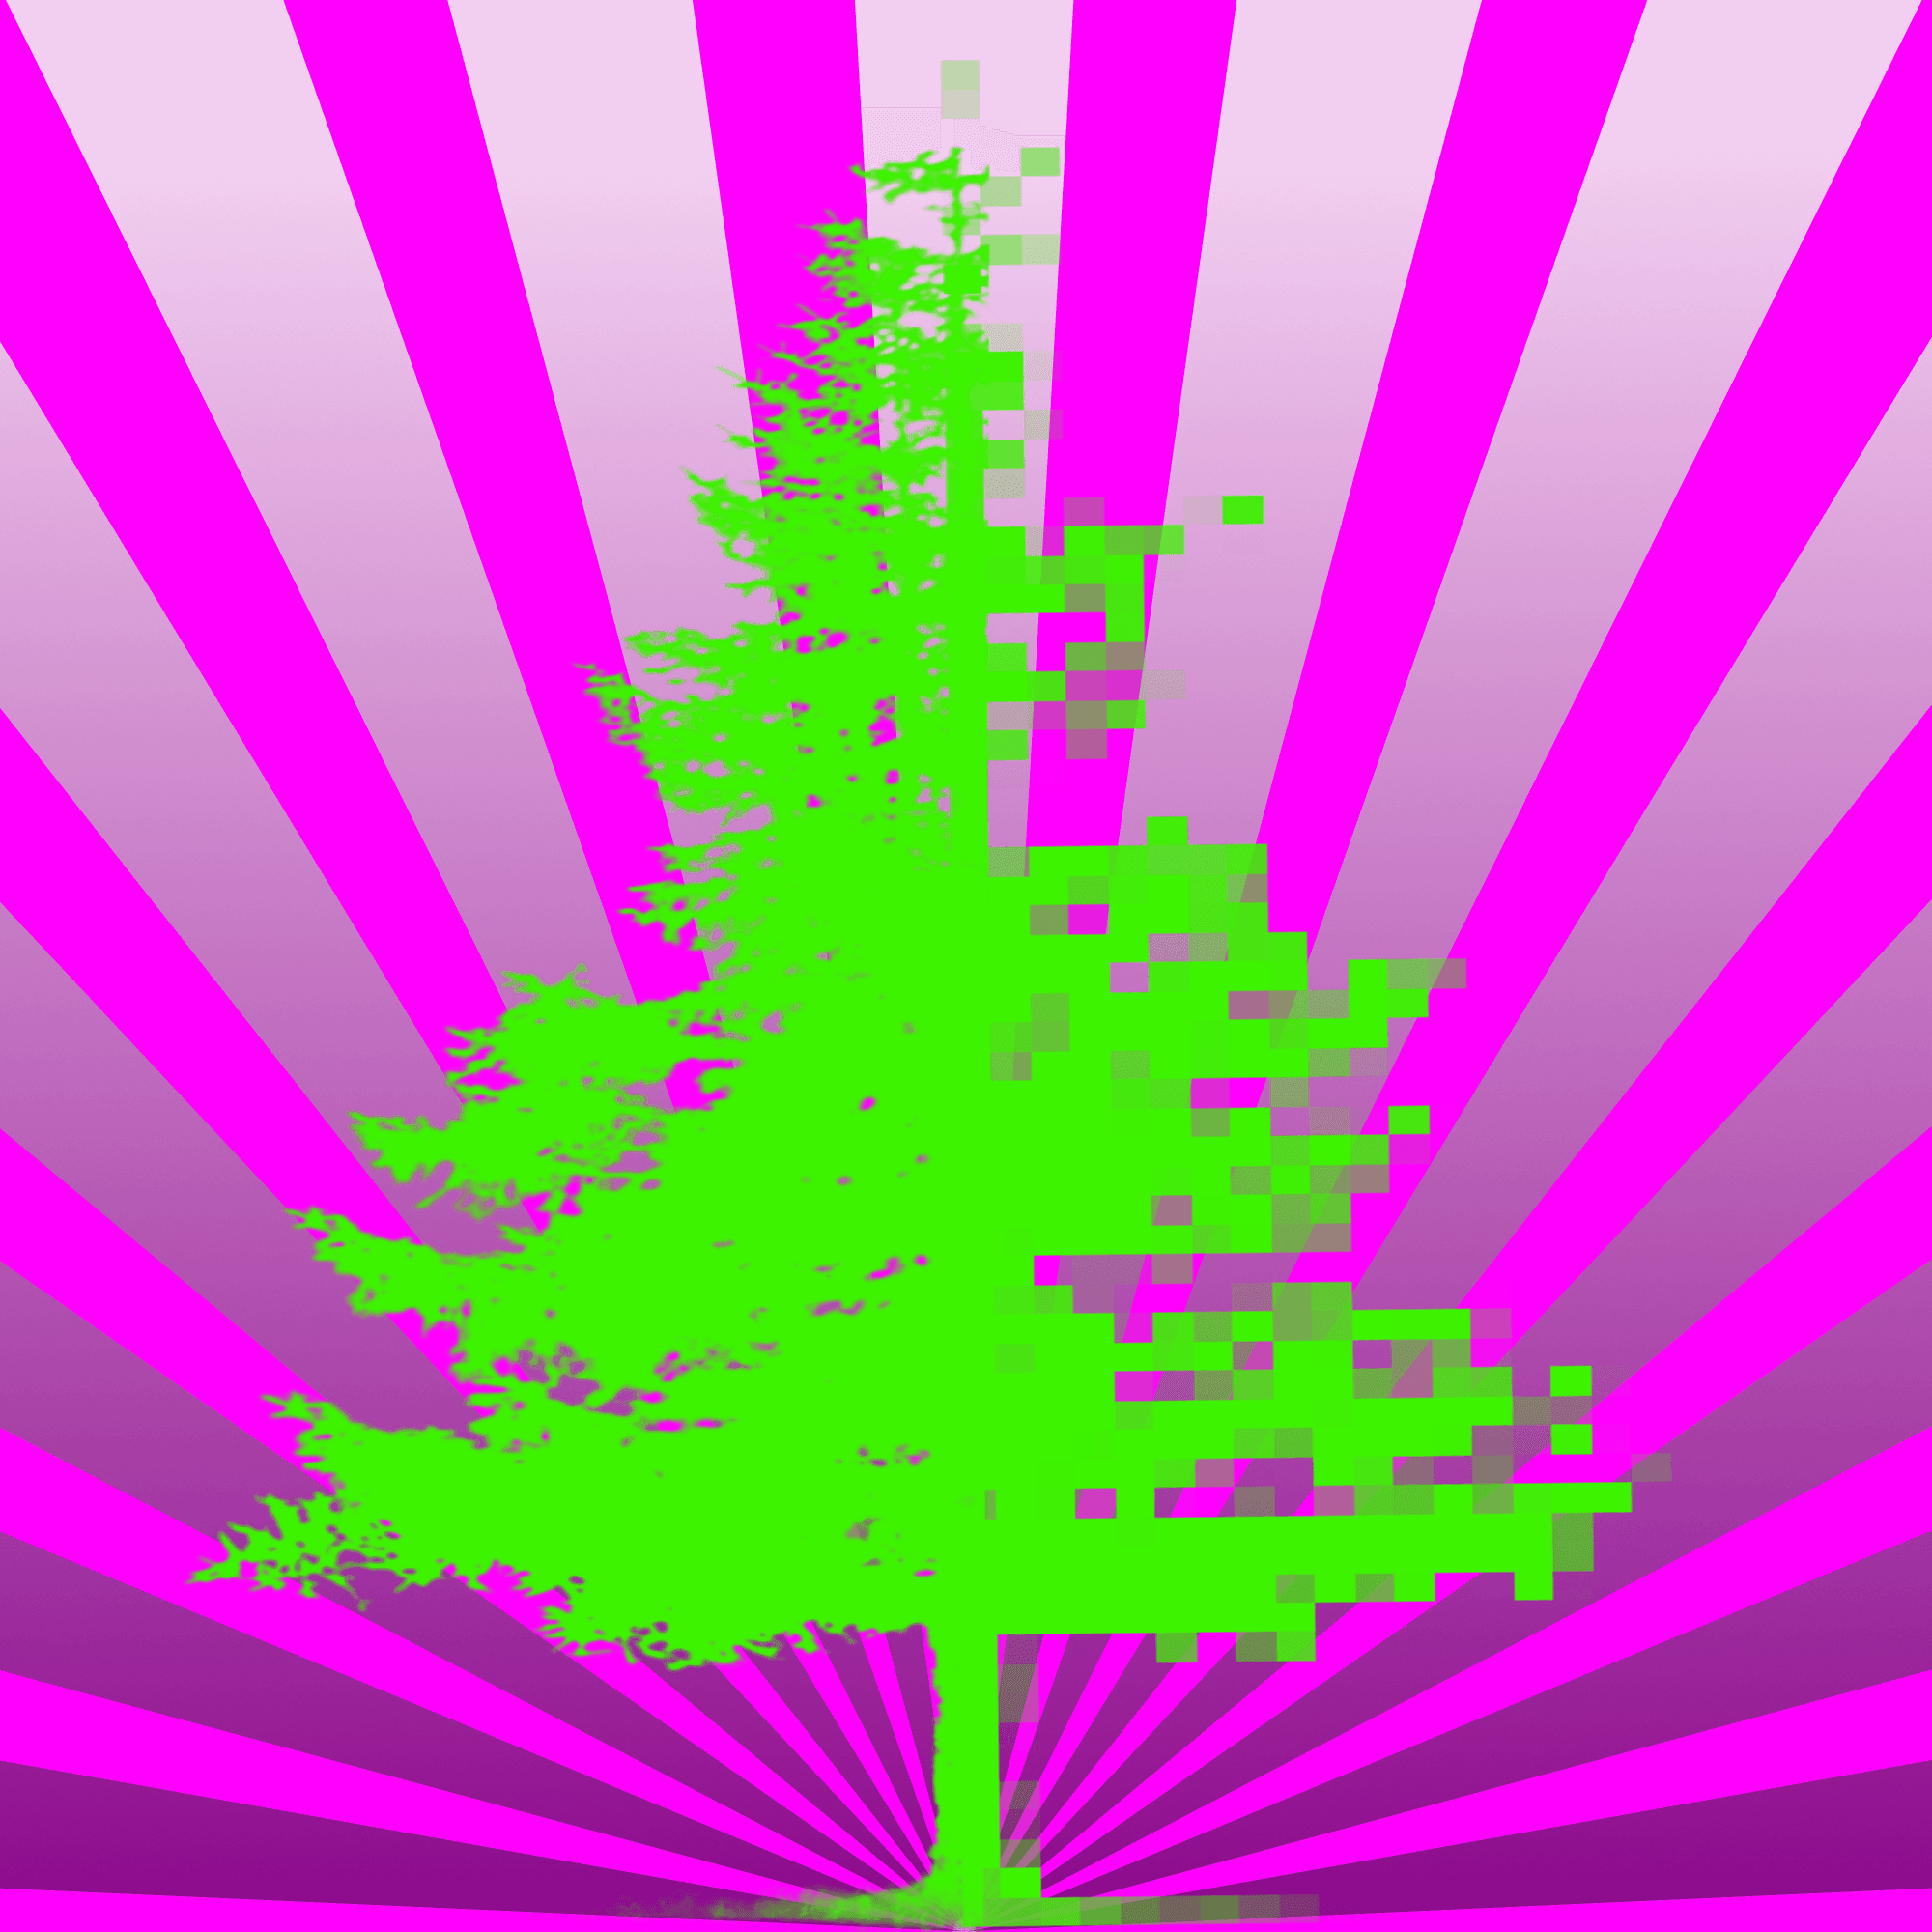 TreeHugger #17 🌲 Tree 17 of 21 Trees